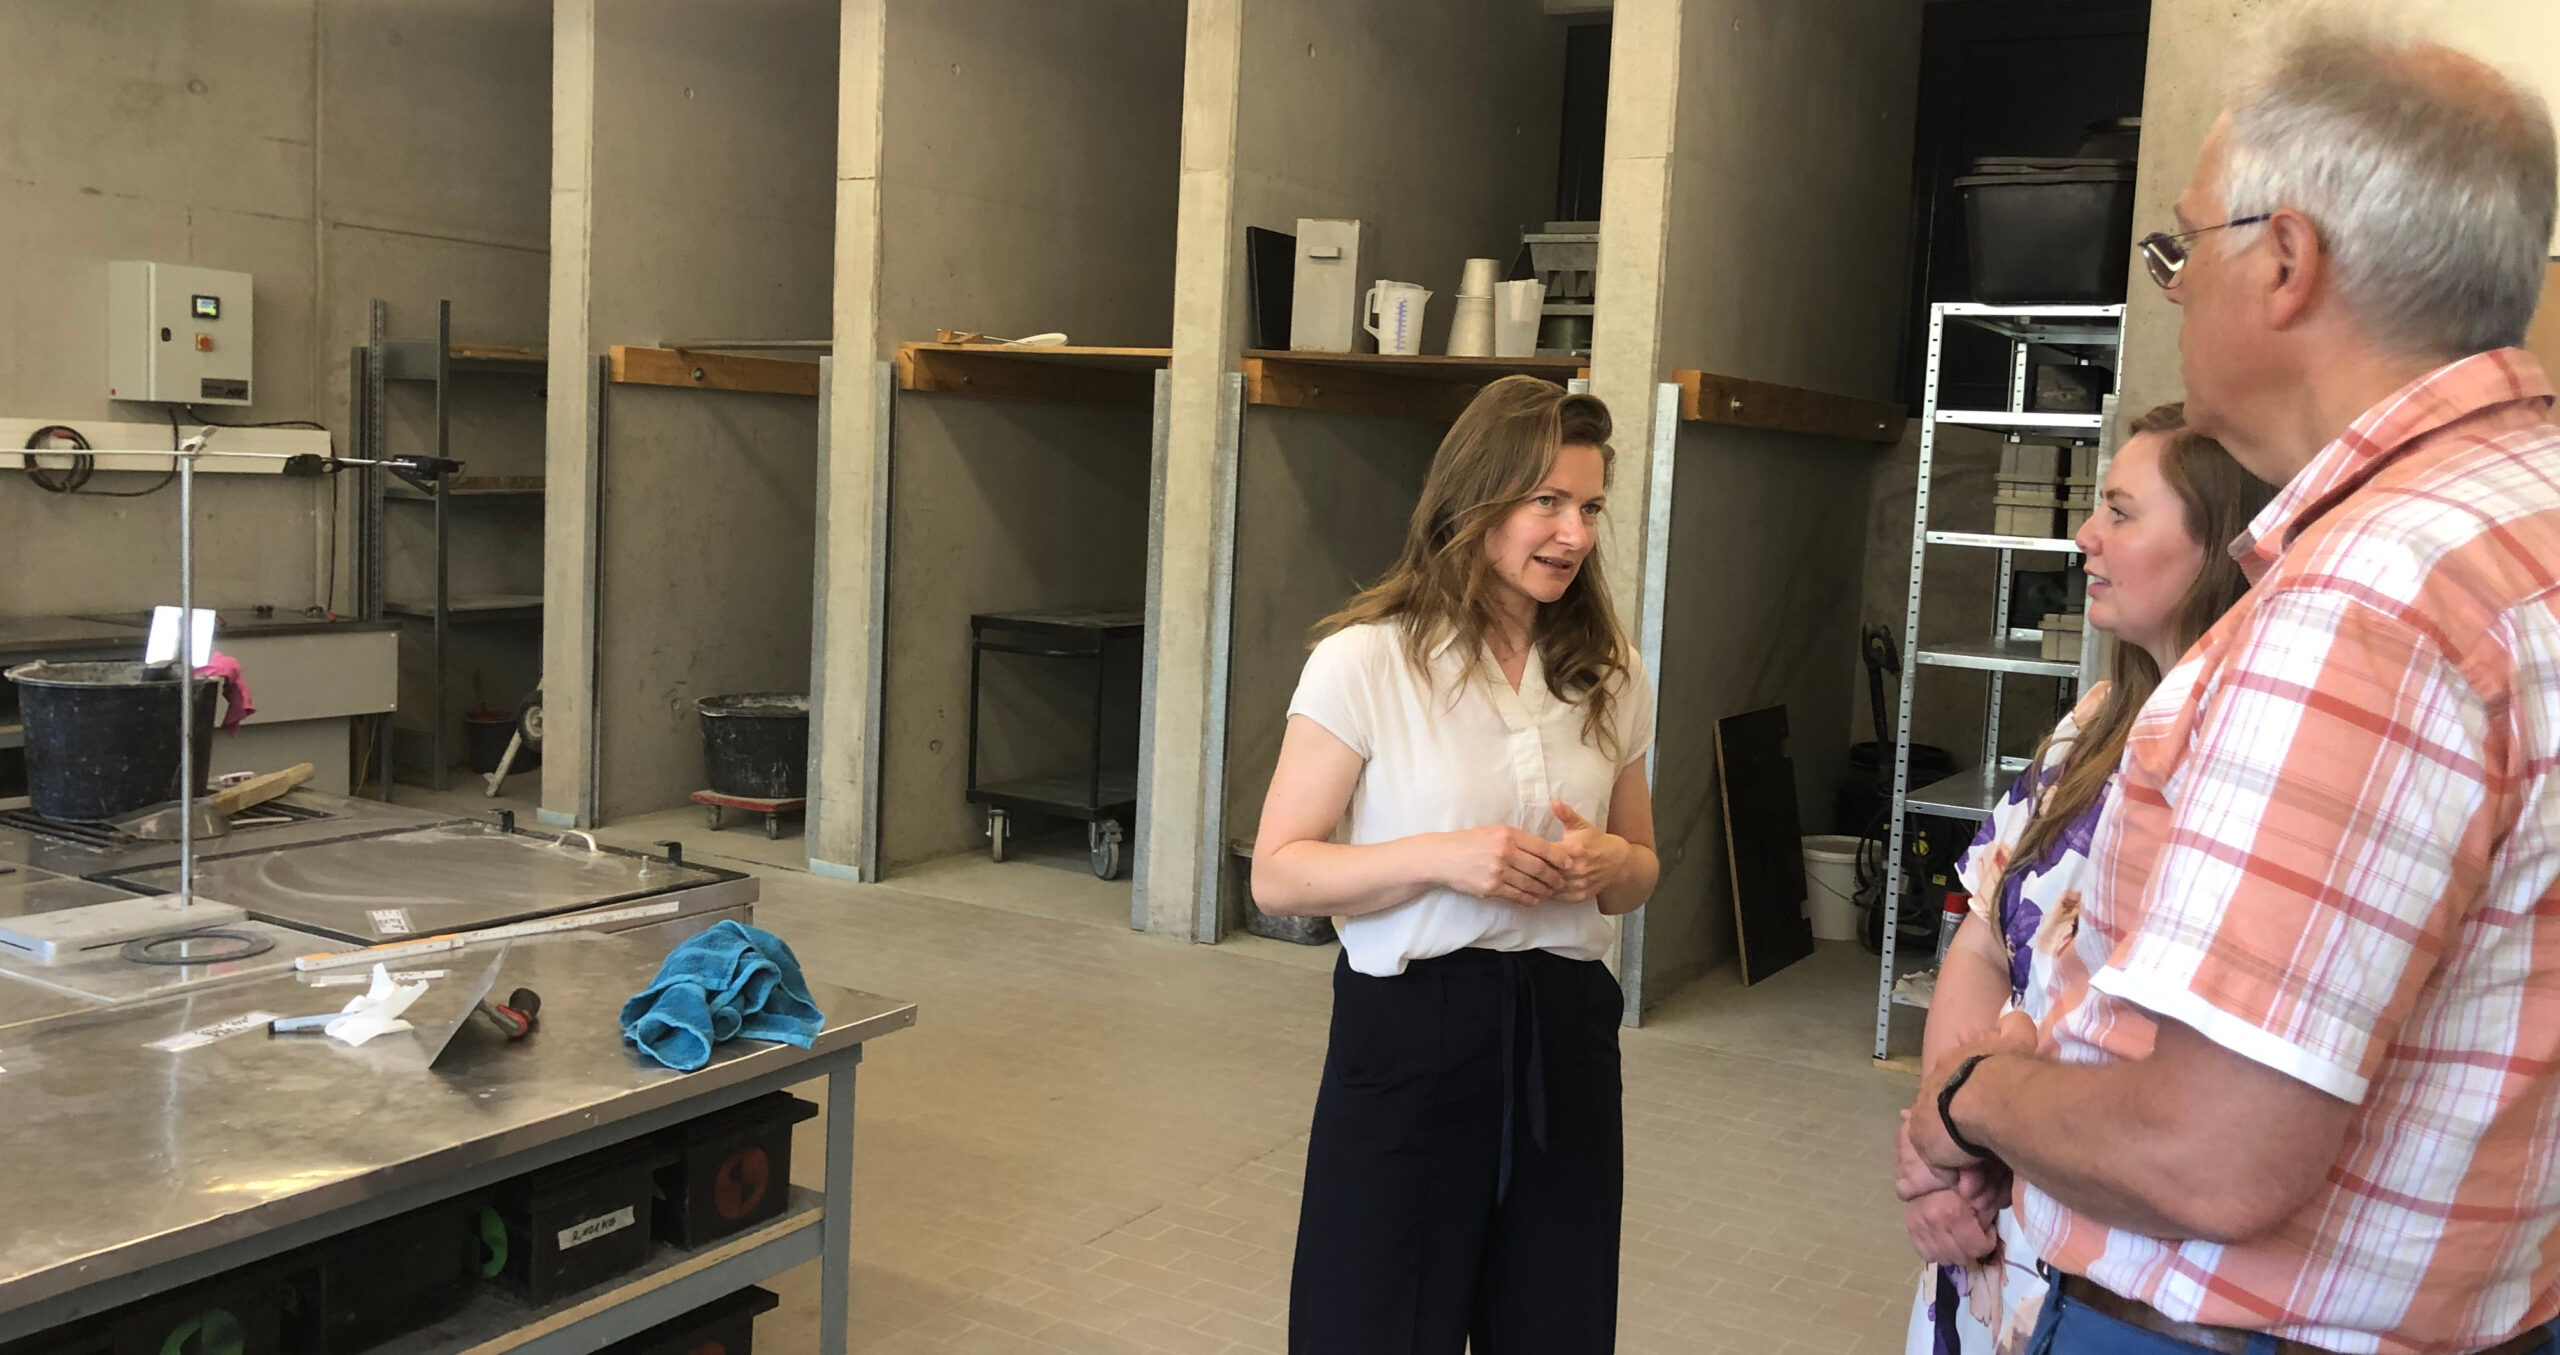 Gemeinsam mit meiner Fraktionskollegin Ricarda Budke habe ich Sonocrete in Cottbus besucht. Die kaufmännische Geschäftsführerin Nora Baum erläuterte uns, wie das von dem Start-up entwickelte Verfahren funktioniert, dass zu weniger Zementbedarf bei der Betonproduktion führt.